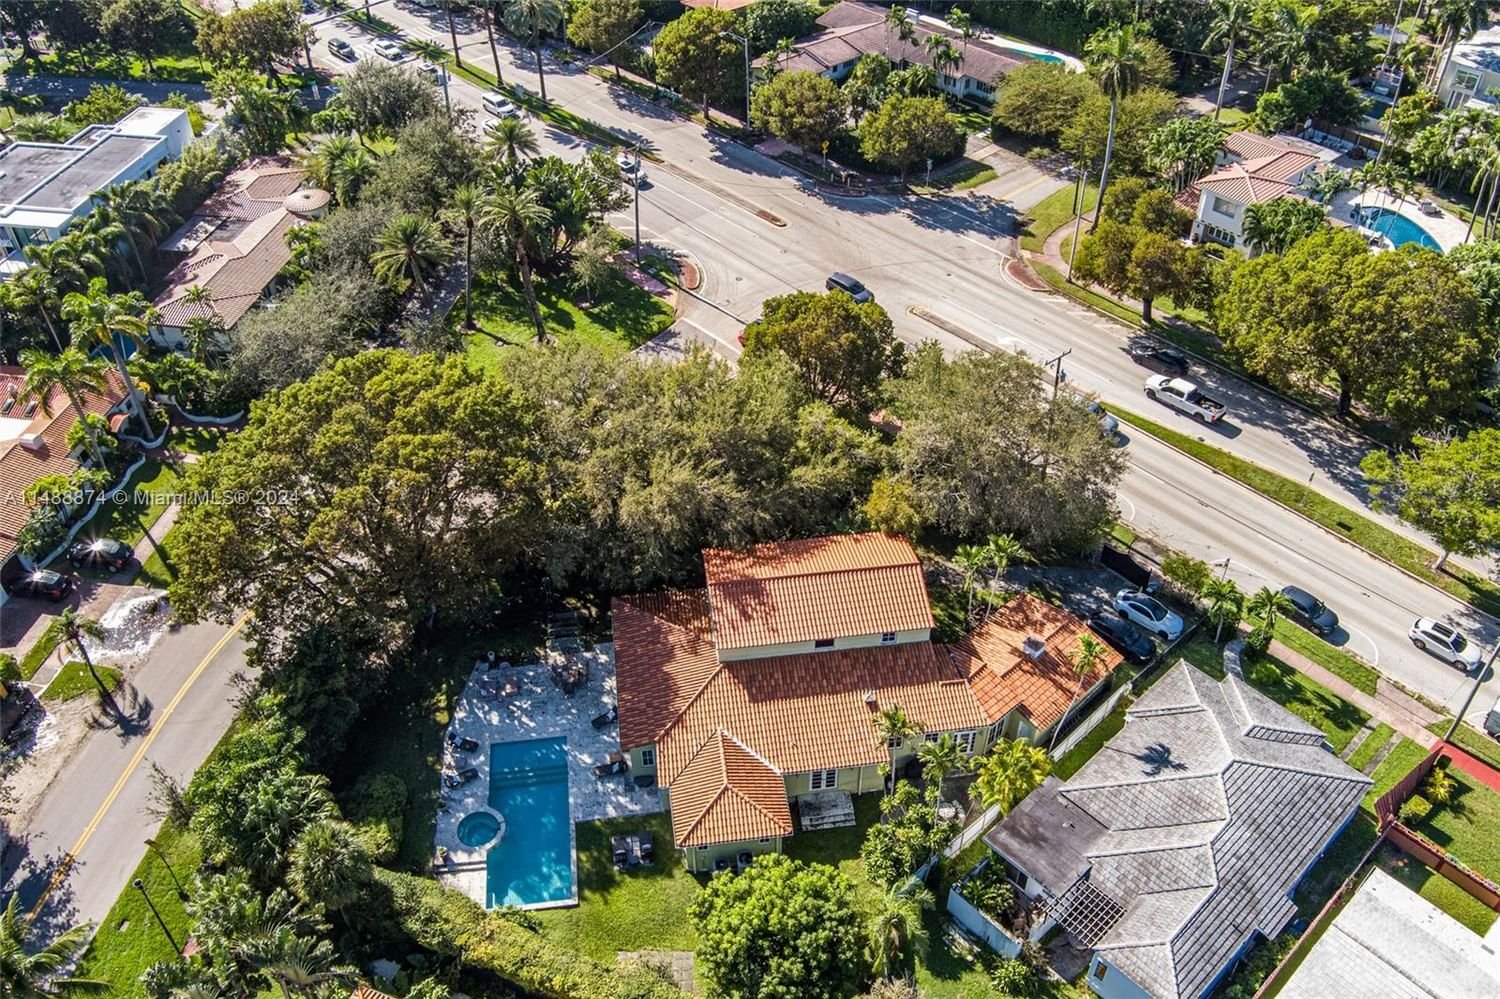 Real estate property located at 5101 Alton Rd, Miami-Dade County, Miami Beach, FL